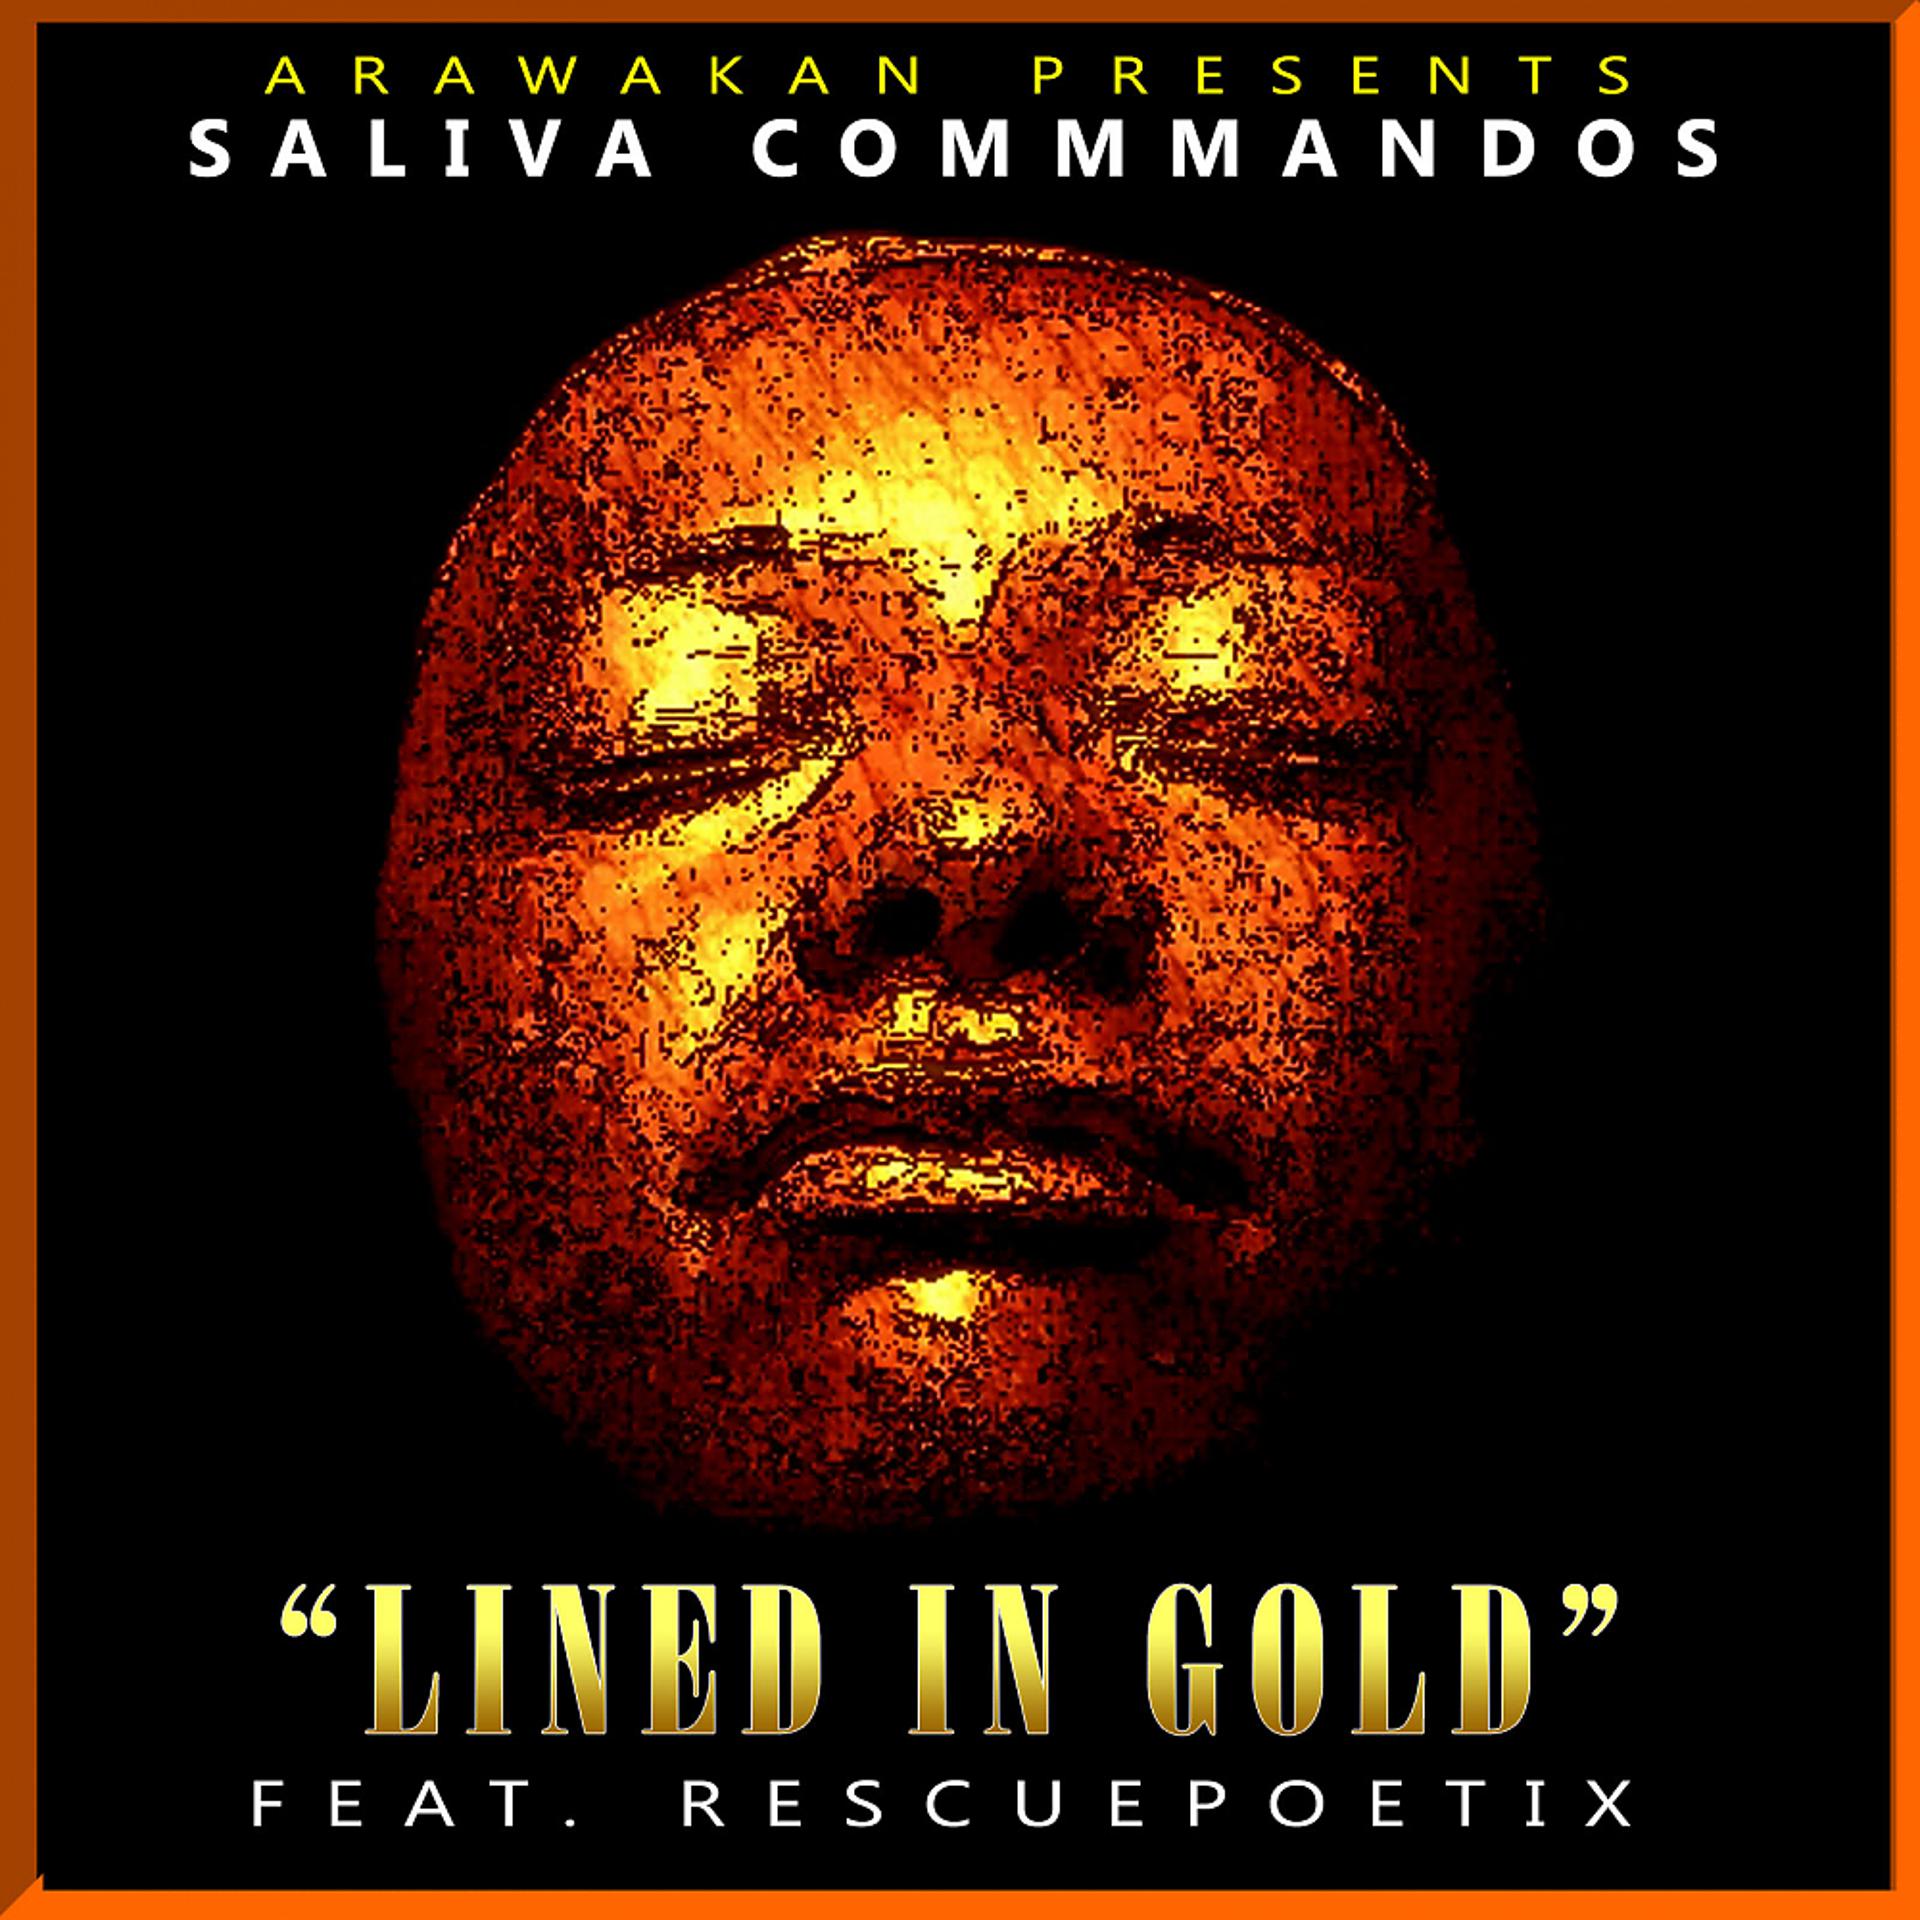 Постер к треку The Saliva Commandos, Rescue Poetix - Lined in Gold